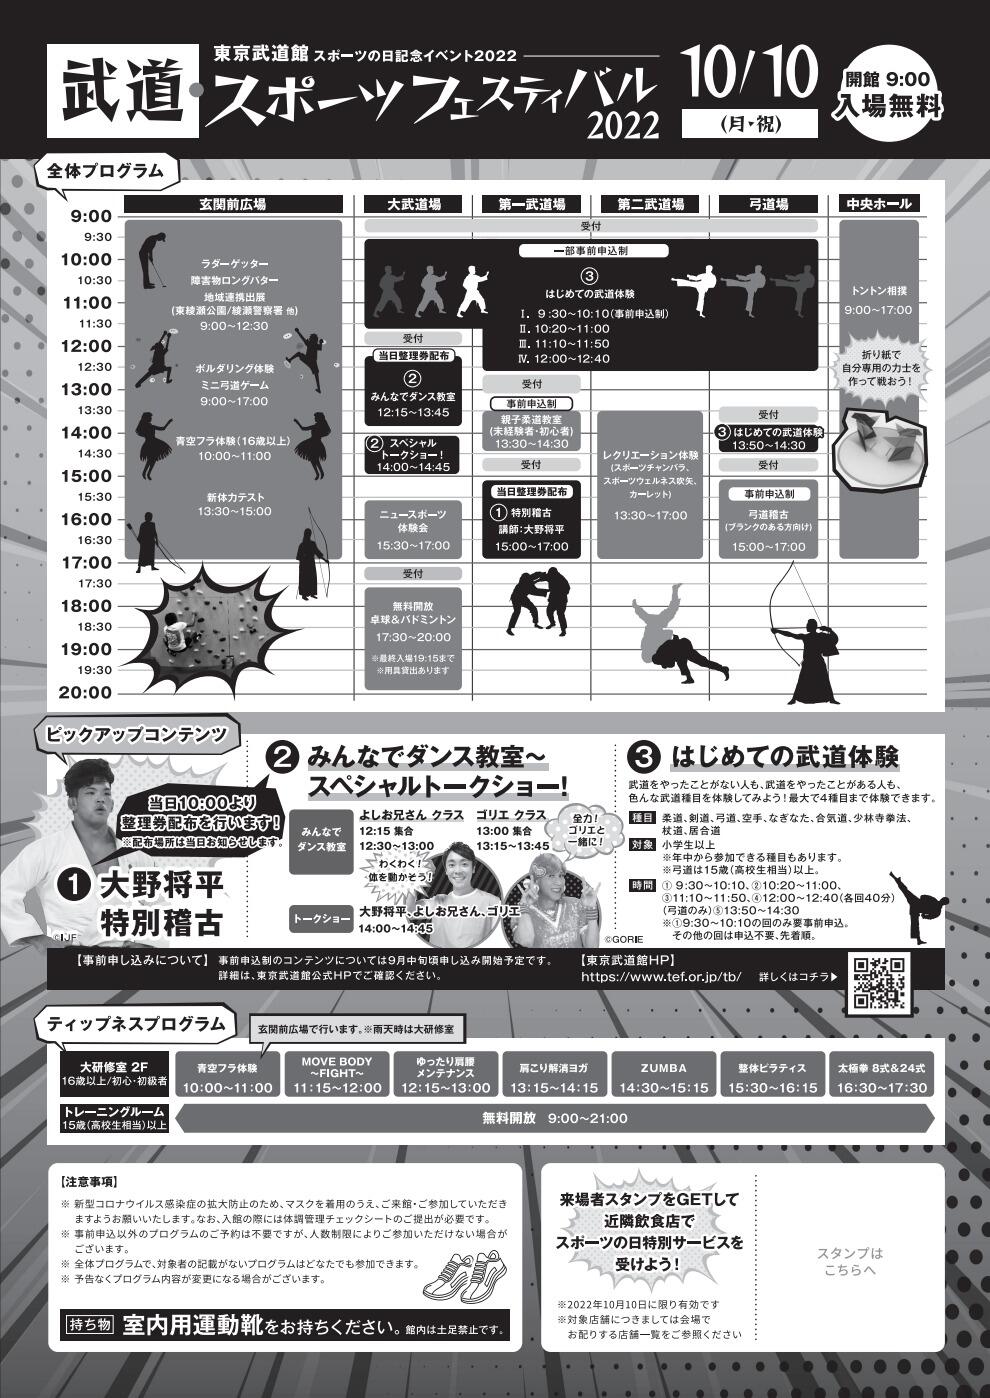 武道・スポーツフェスティバル2022「はじめての武道体験」【弓道】